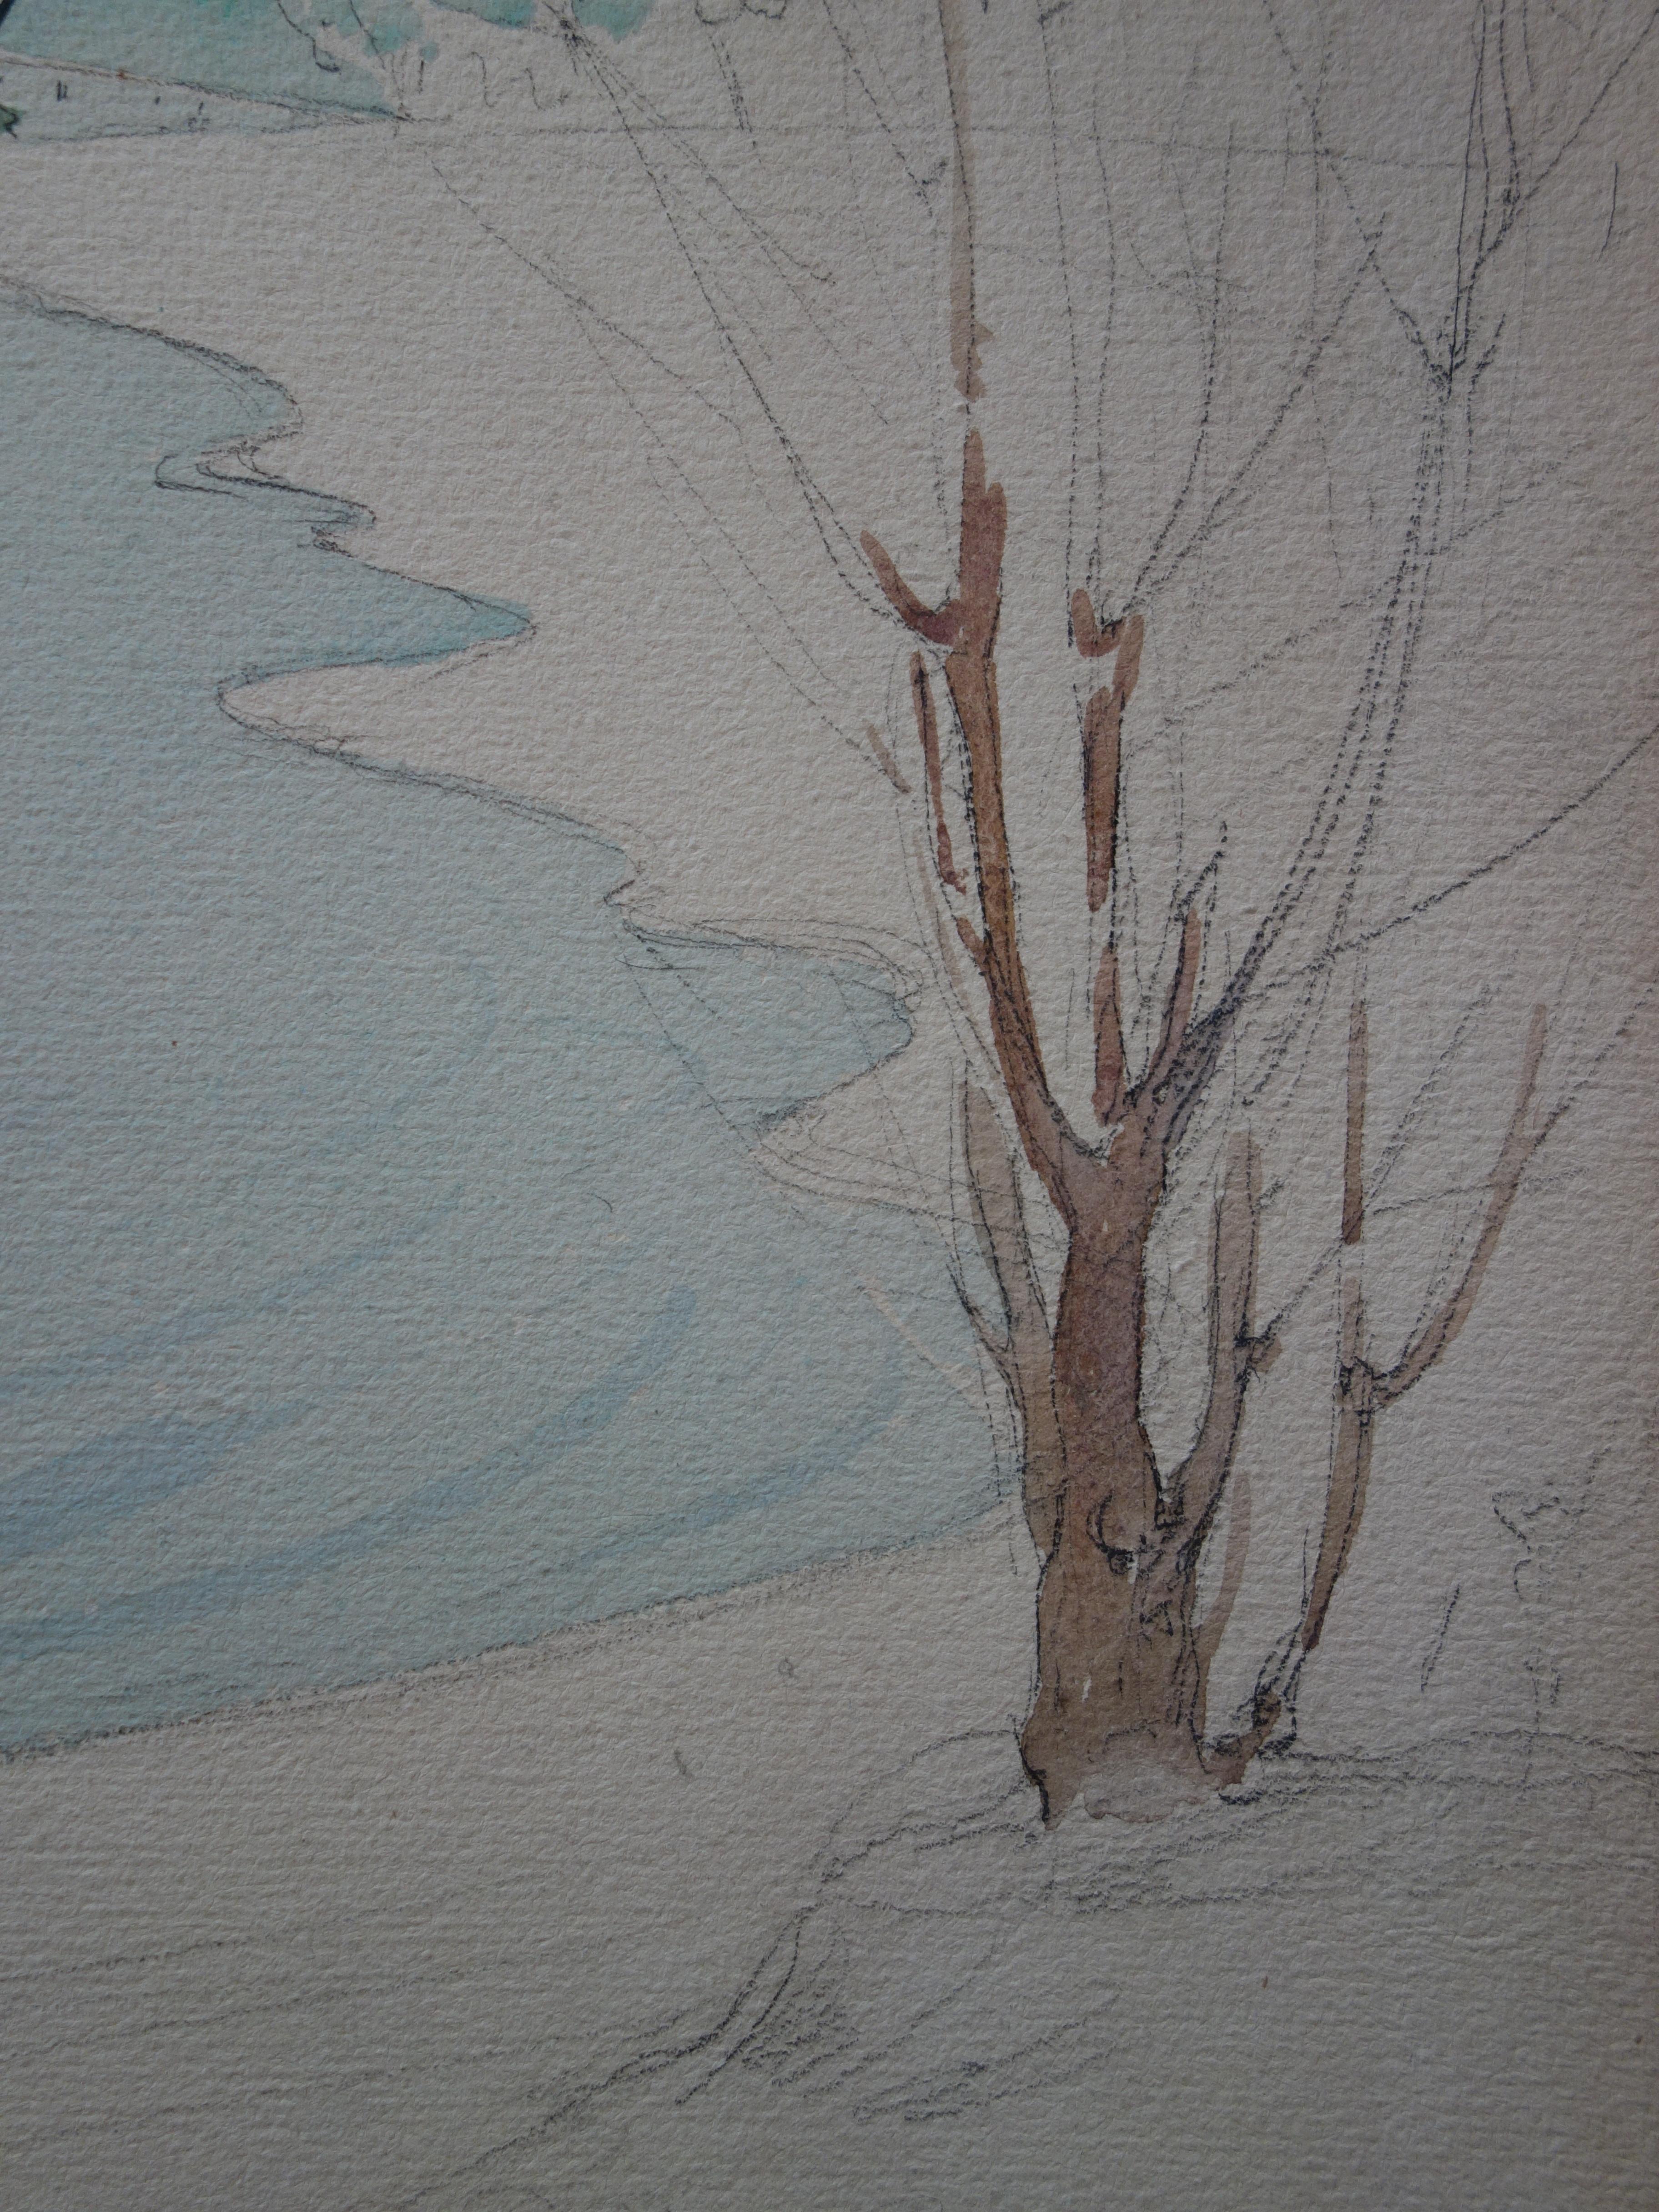 Gustave Poetzsch (1870-1950) 
Der See im Winter

Originalzeichnungen in Kohle und Aquarell
Stempel der Nachlassversteigerung auf der Rückseite
auf cremefarbenem Pergament, auf Karton aufgezogen 41 x 32 cm (ca. 16 x 13 in)

Sehr guter Zustand -